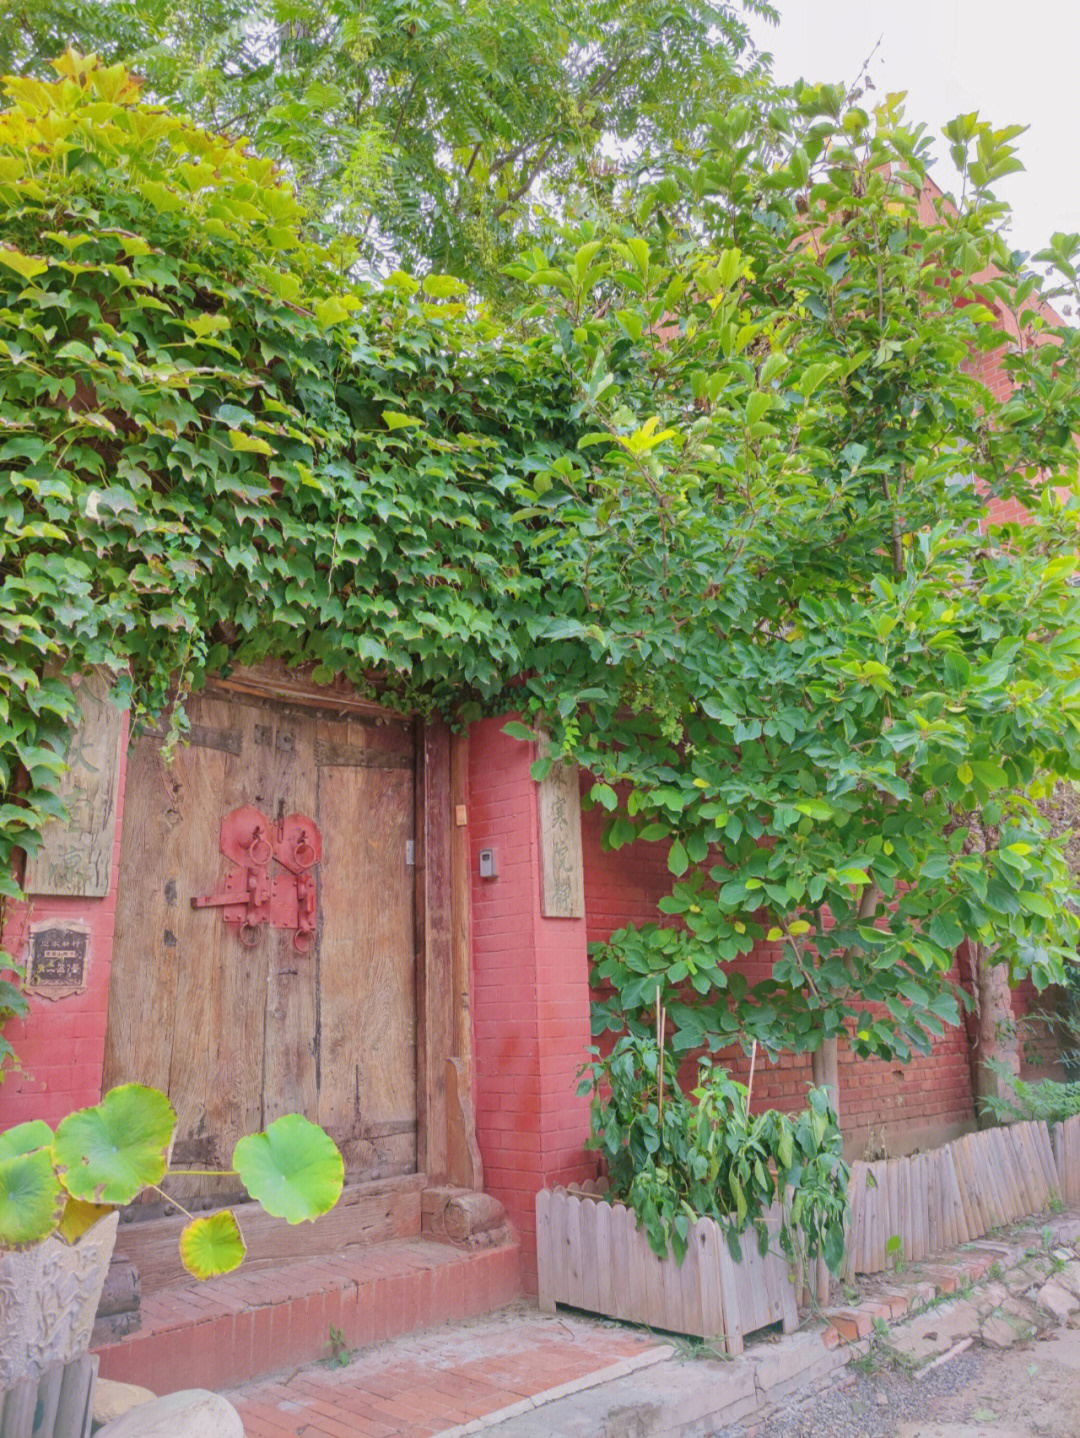 松61舍民宿位于北京通州区皇家新村,以前叫做皇木厂村